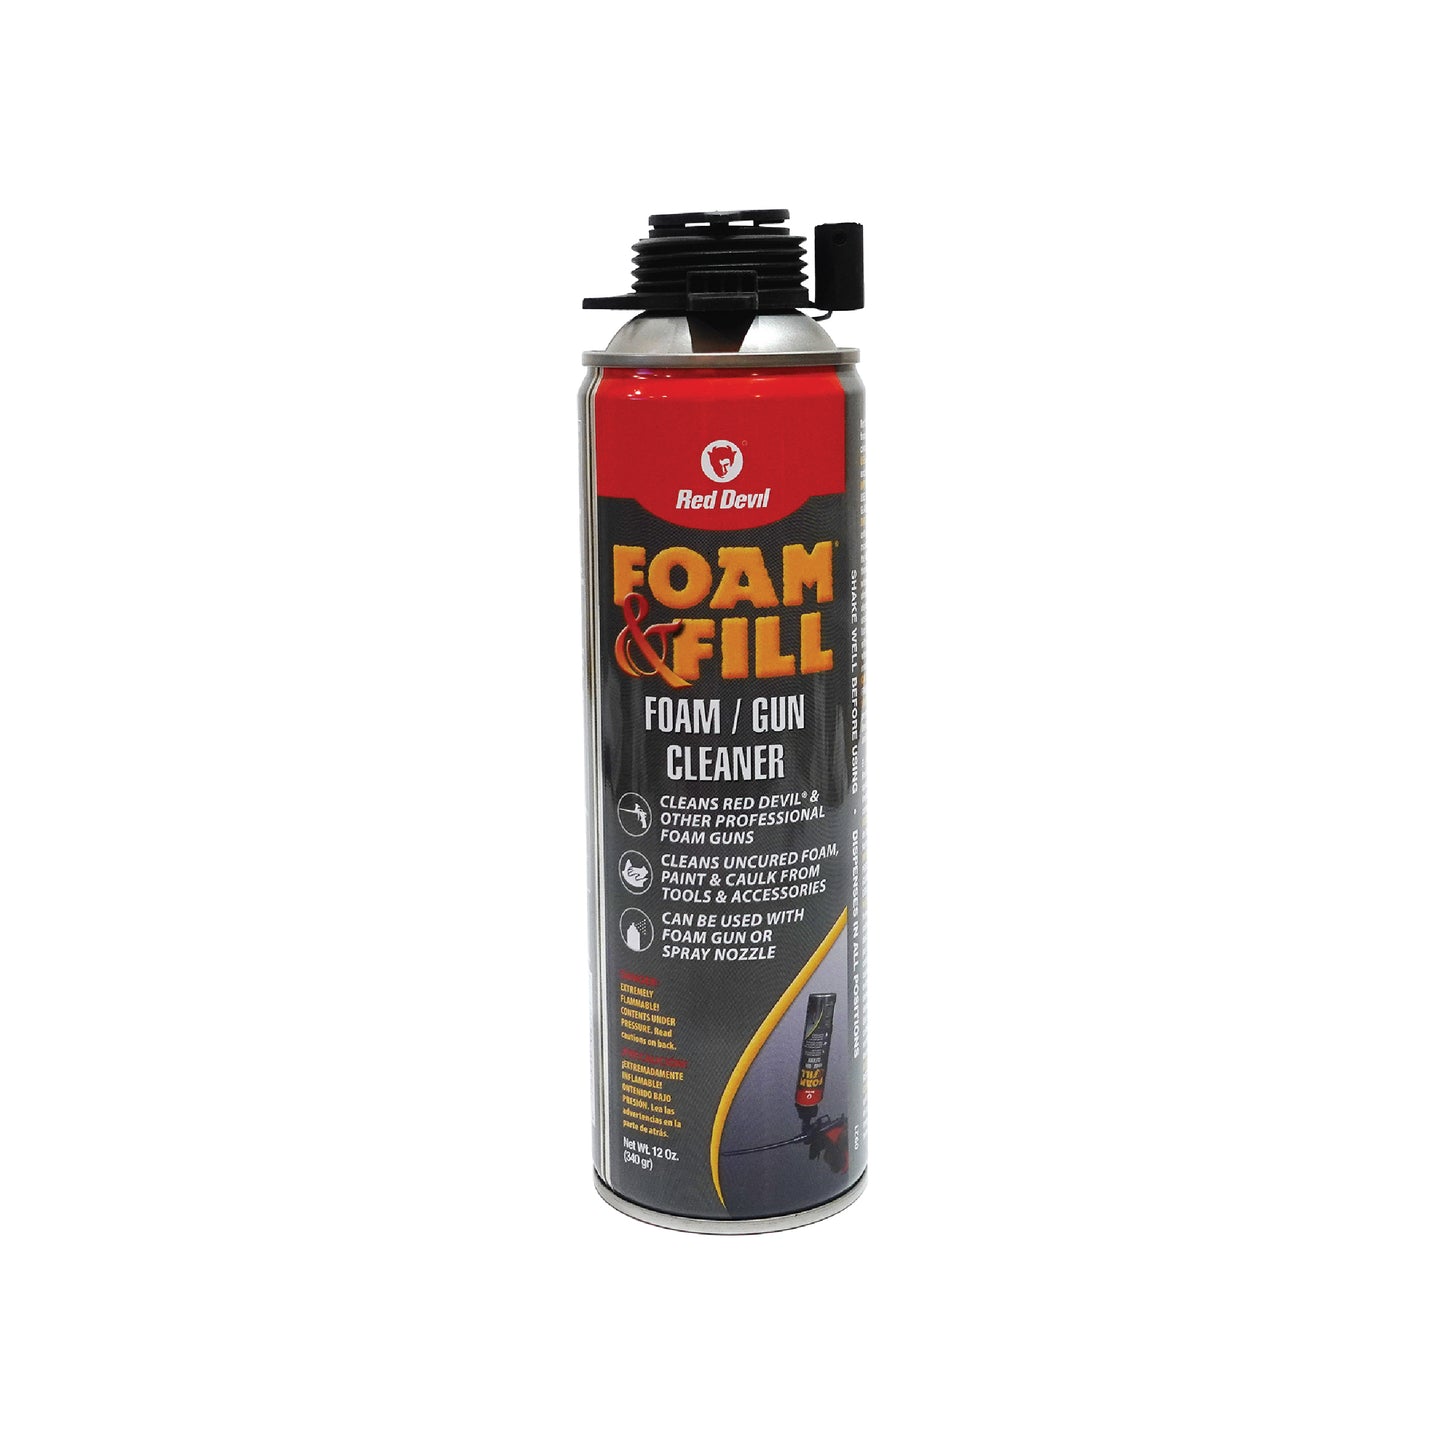 Foam & Fill® Foam / Gun Cleaner 12 Oz. (340 g) Pressurized Canister Clear